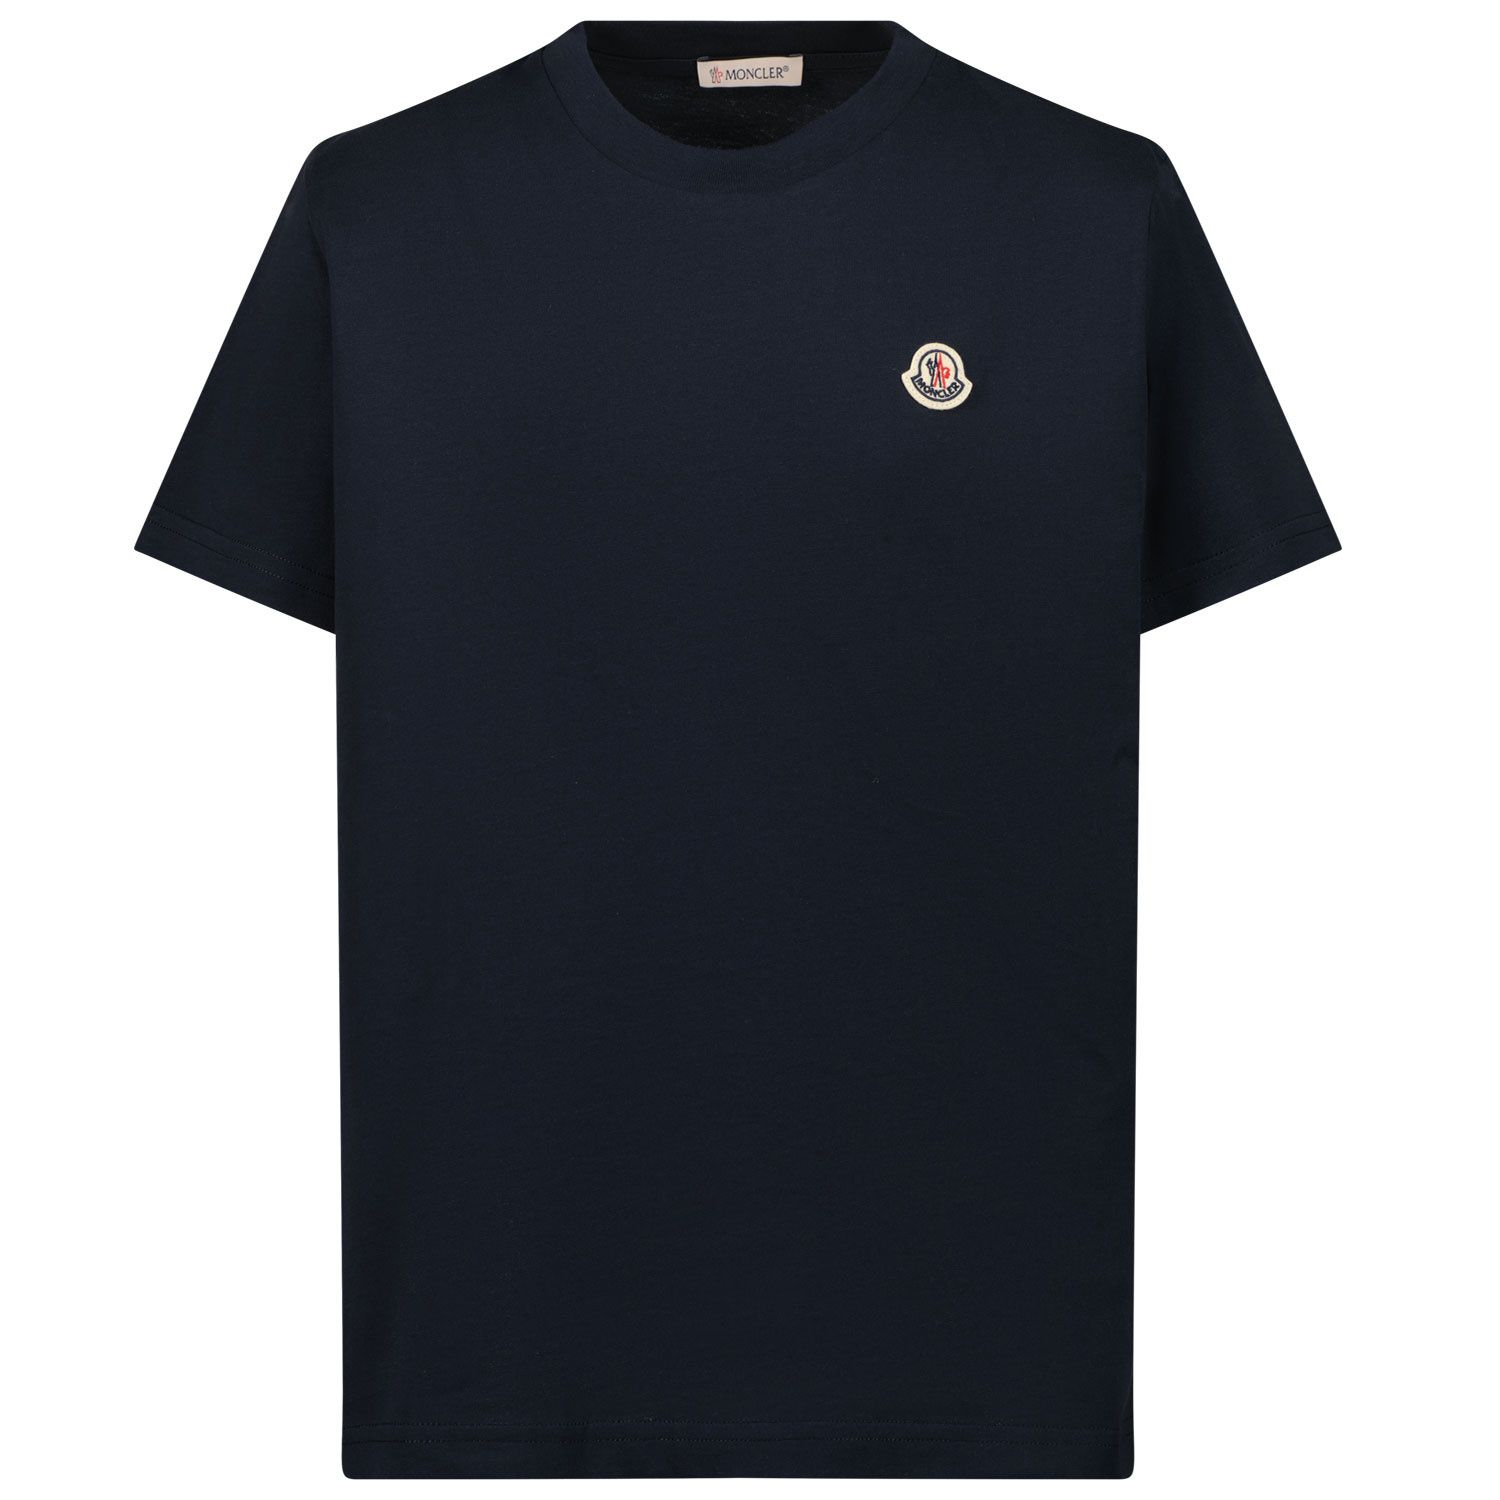 Afbeelding van Moncler 8C00035 kinder t-shirt navy